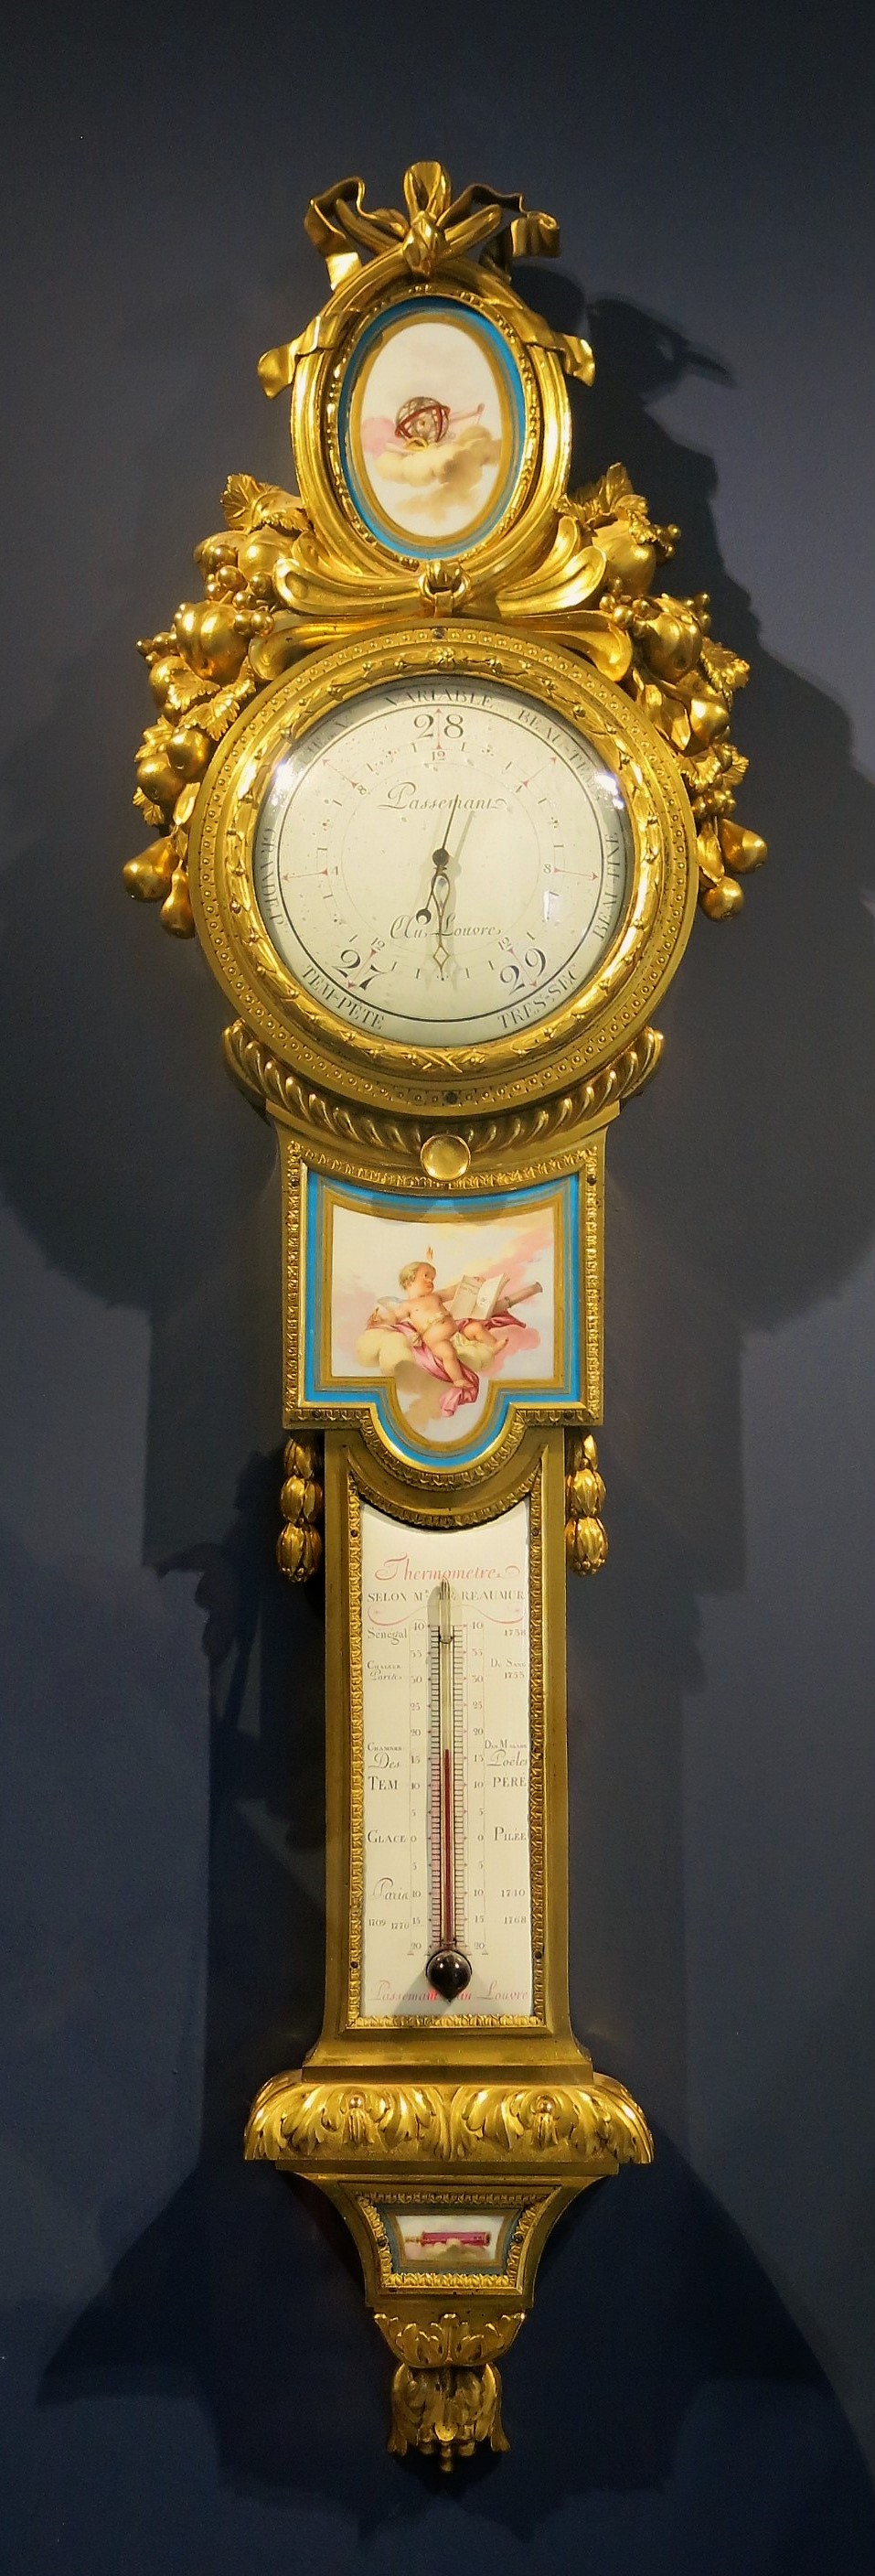 File:Baromètre - thermomètre (Louvre, OA 10545).jpg - Wikipedia